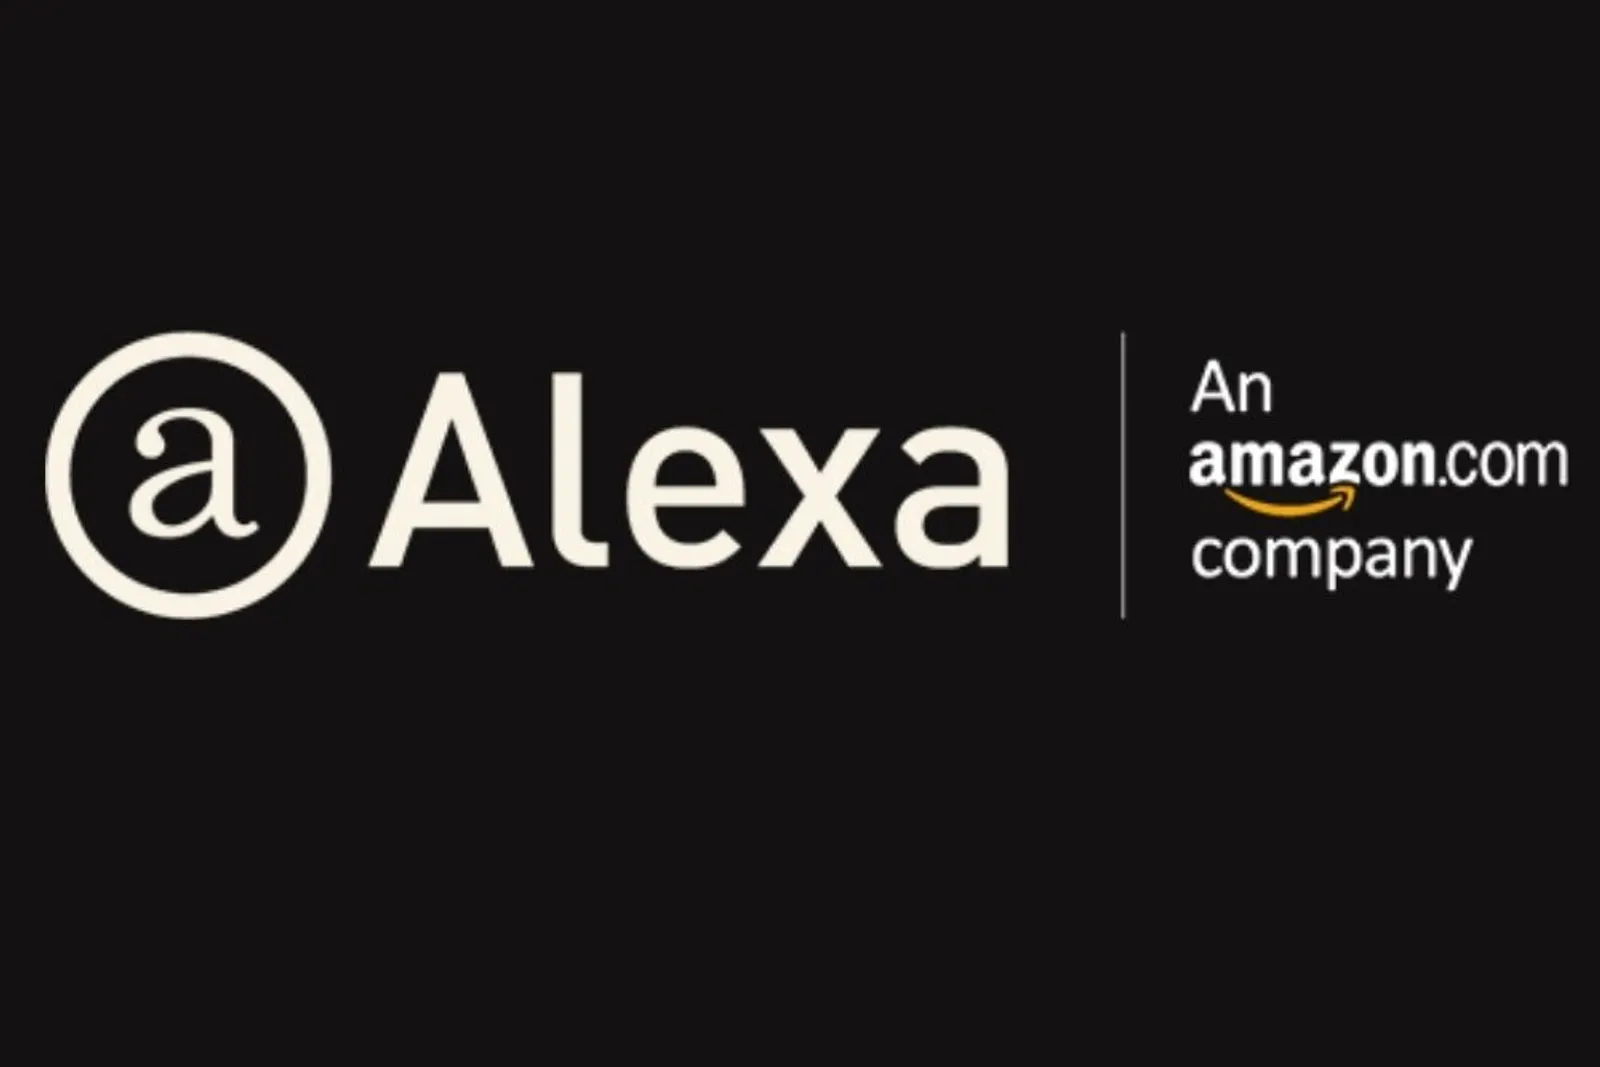 Penyedia Web Traffic, Alexa.Com Akan Tutup Pada 1 Mei 2022 Mendatang